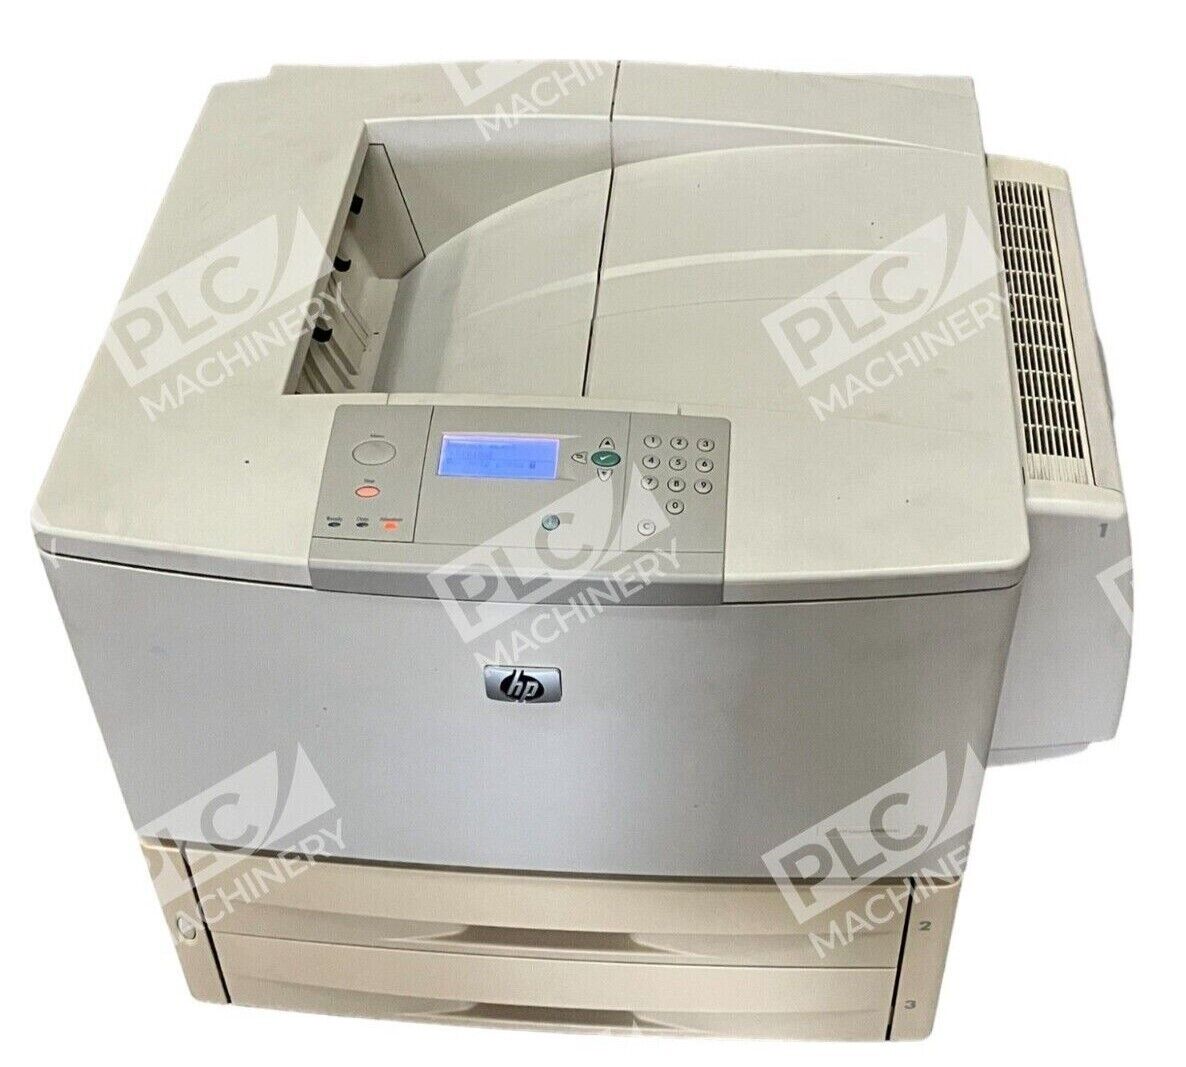 HP Q3723A LaserJet 9050dn Printer